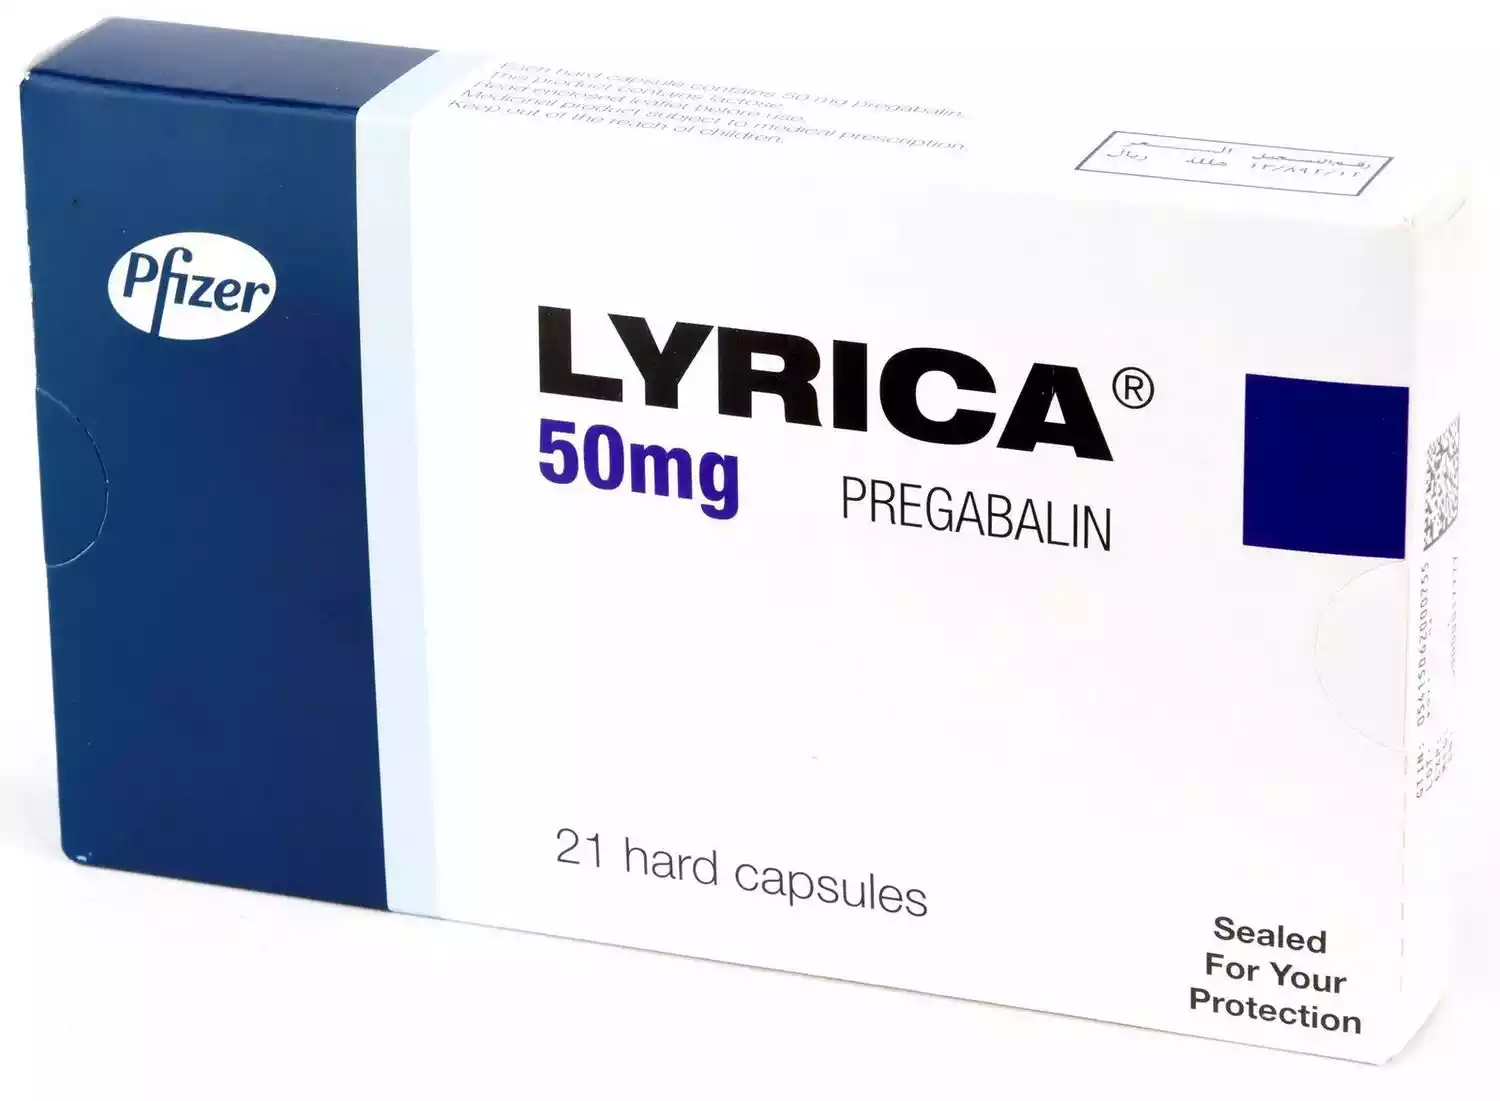 Παρενέργειες και δοσολογία του φαρμάκου Lyrica.